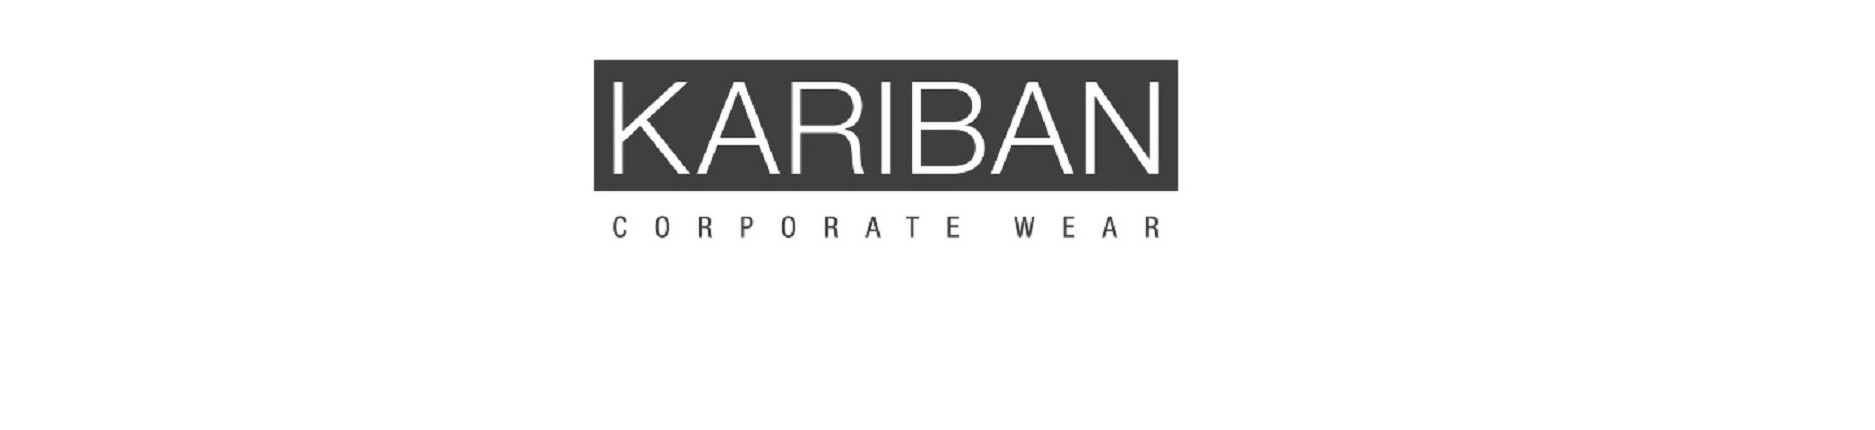 Vêtements Kariban | Mes Tenues Perso